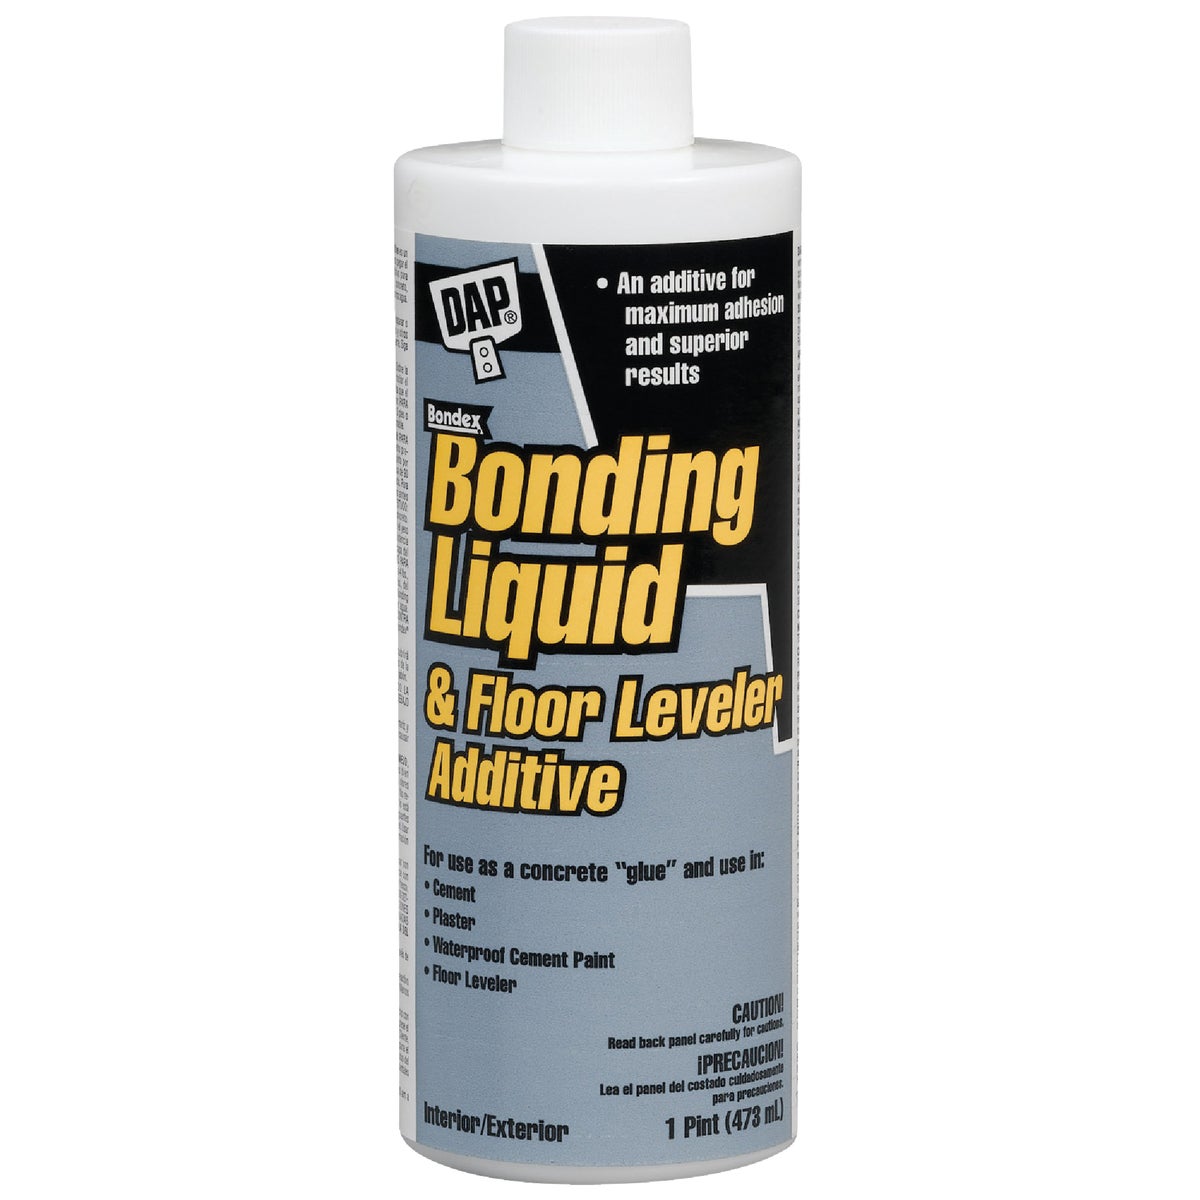 Item 272092, DAP /Bondex bonding liquid and floor leveler additive is a versatile 